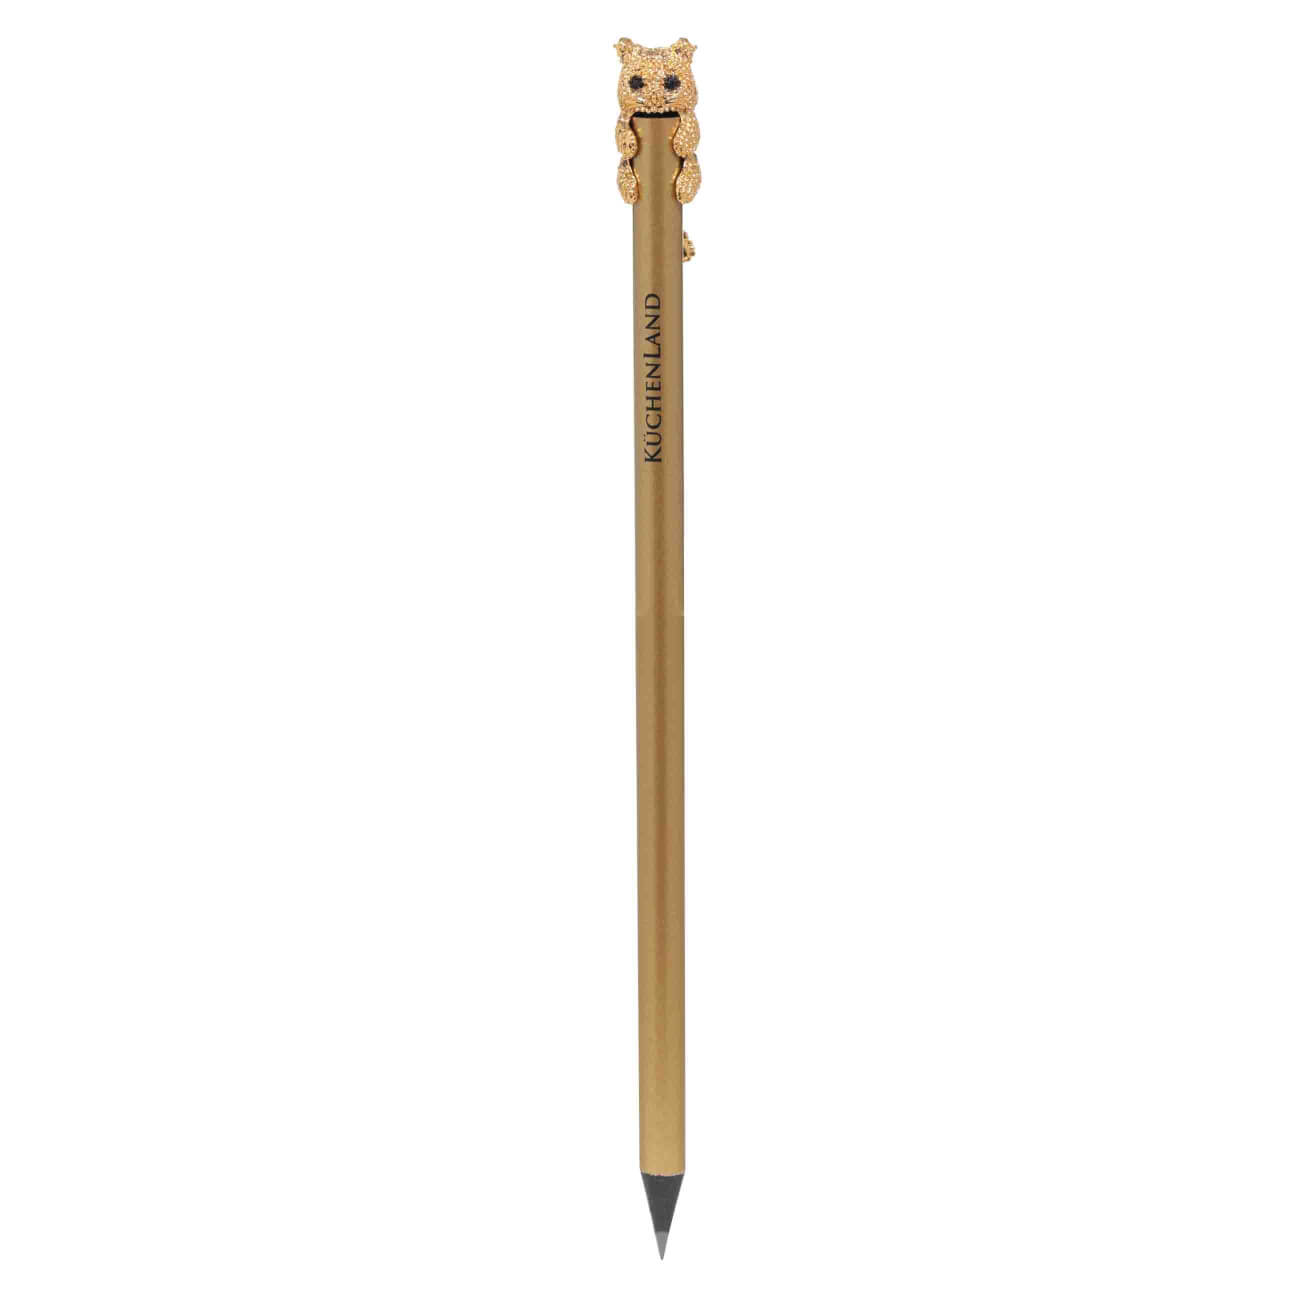 Карандаш, 18 см, чернографитный, с фигуркой, золотистый, Кот, Draw карандаш 18 см чернографитный серебристый draw sparcle